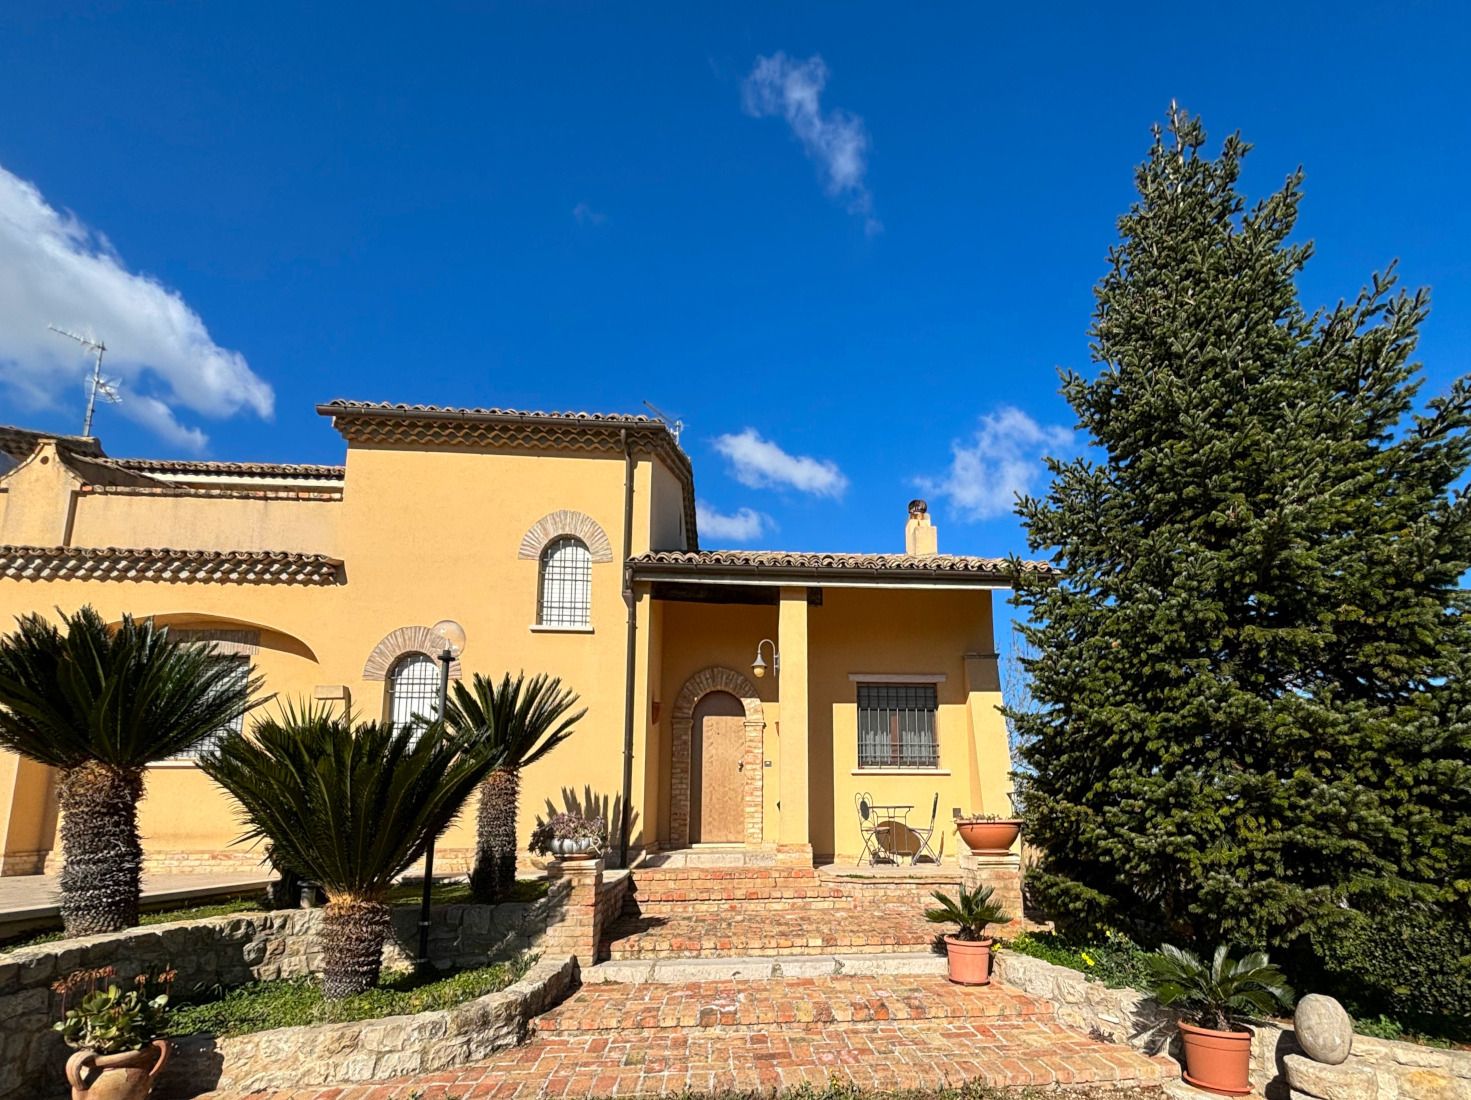 Vendita Villa Guglionesi, Molise | luxforsale.it